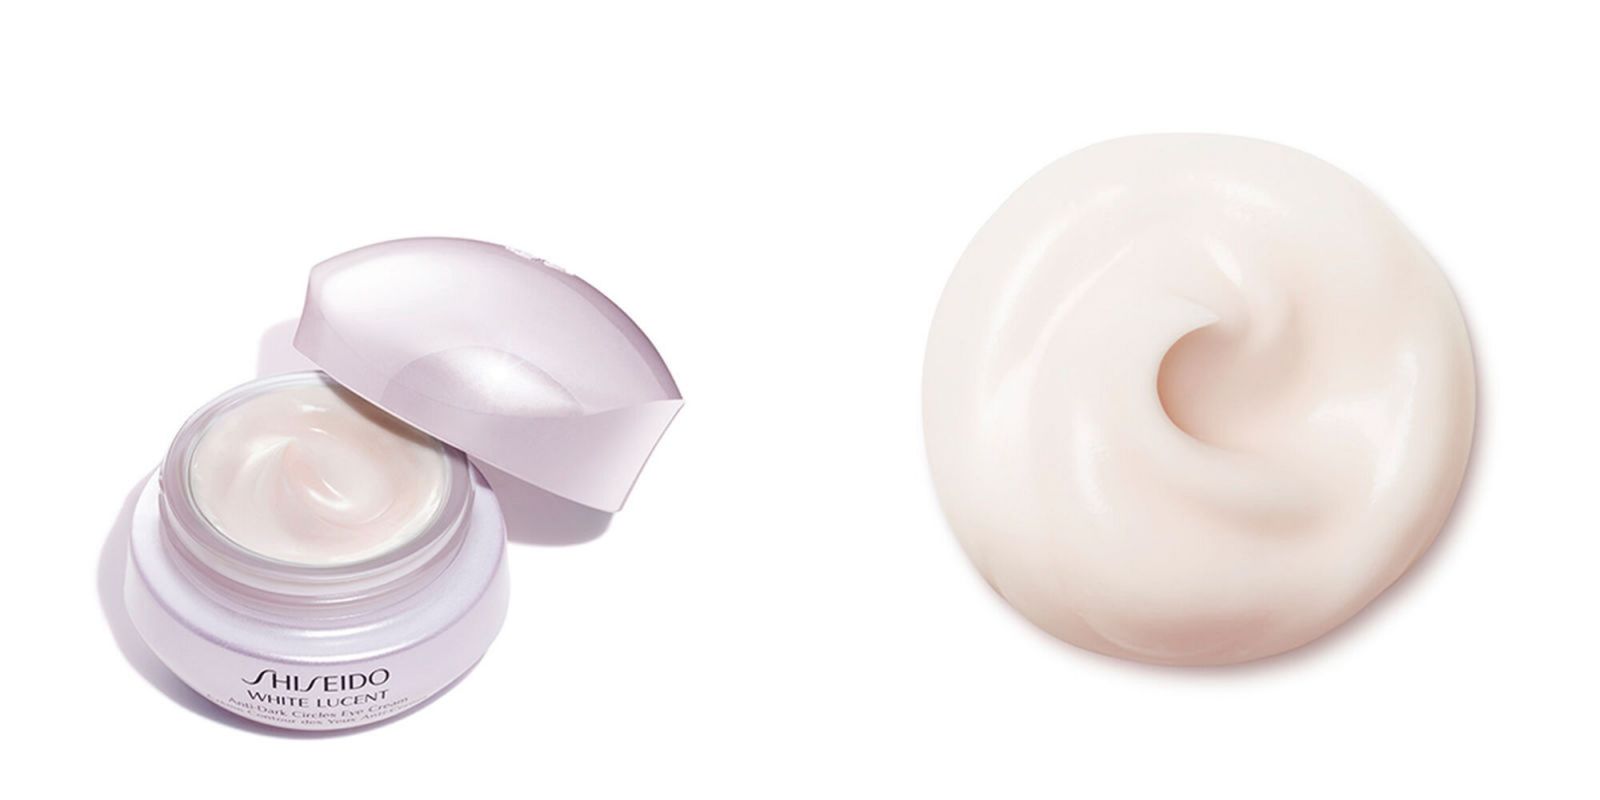 Shiseido White Lucent Anti-Dark Circles Eye Cream giúp hỗ trợ tăng tuần hoàn máu cho đôi mắt bừng sáng sức sống